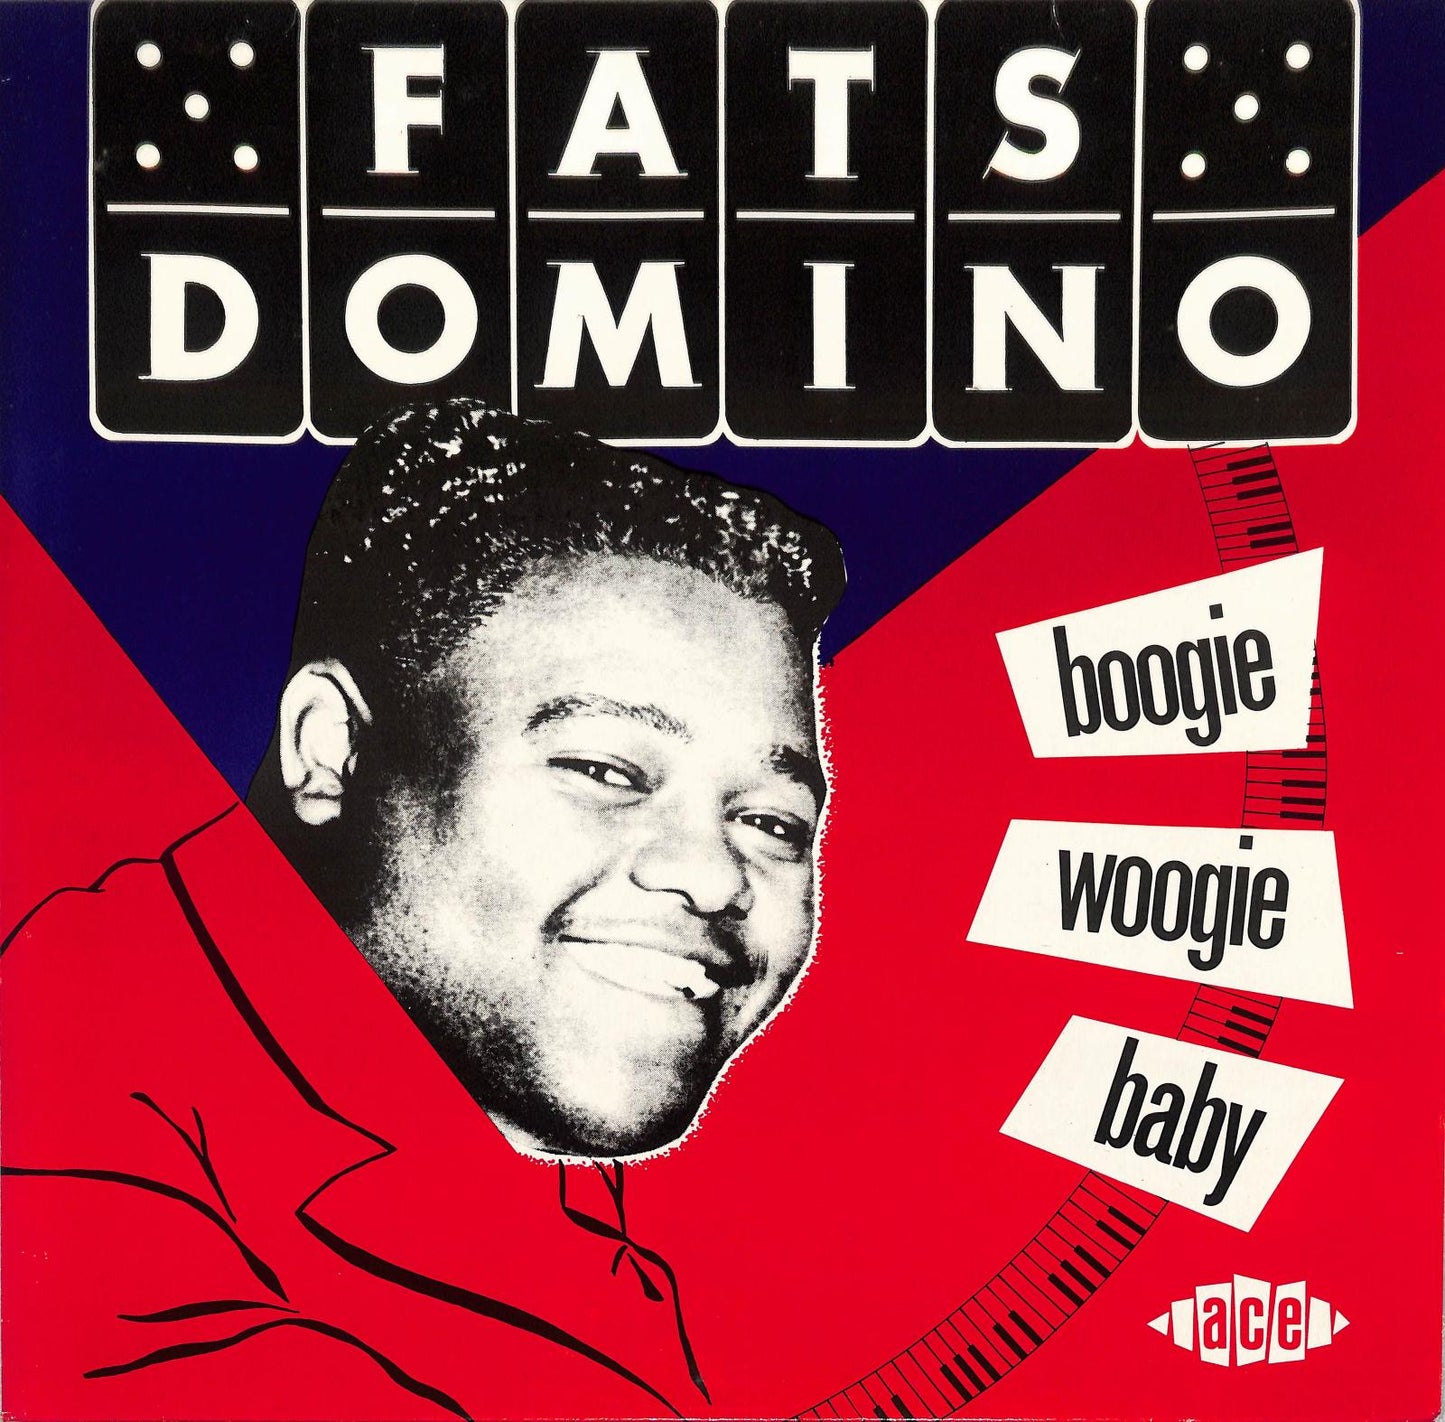 FATS DOMINO - Boogie Woogie Baby